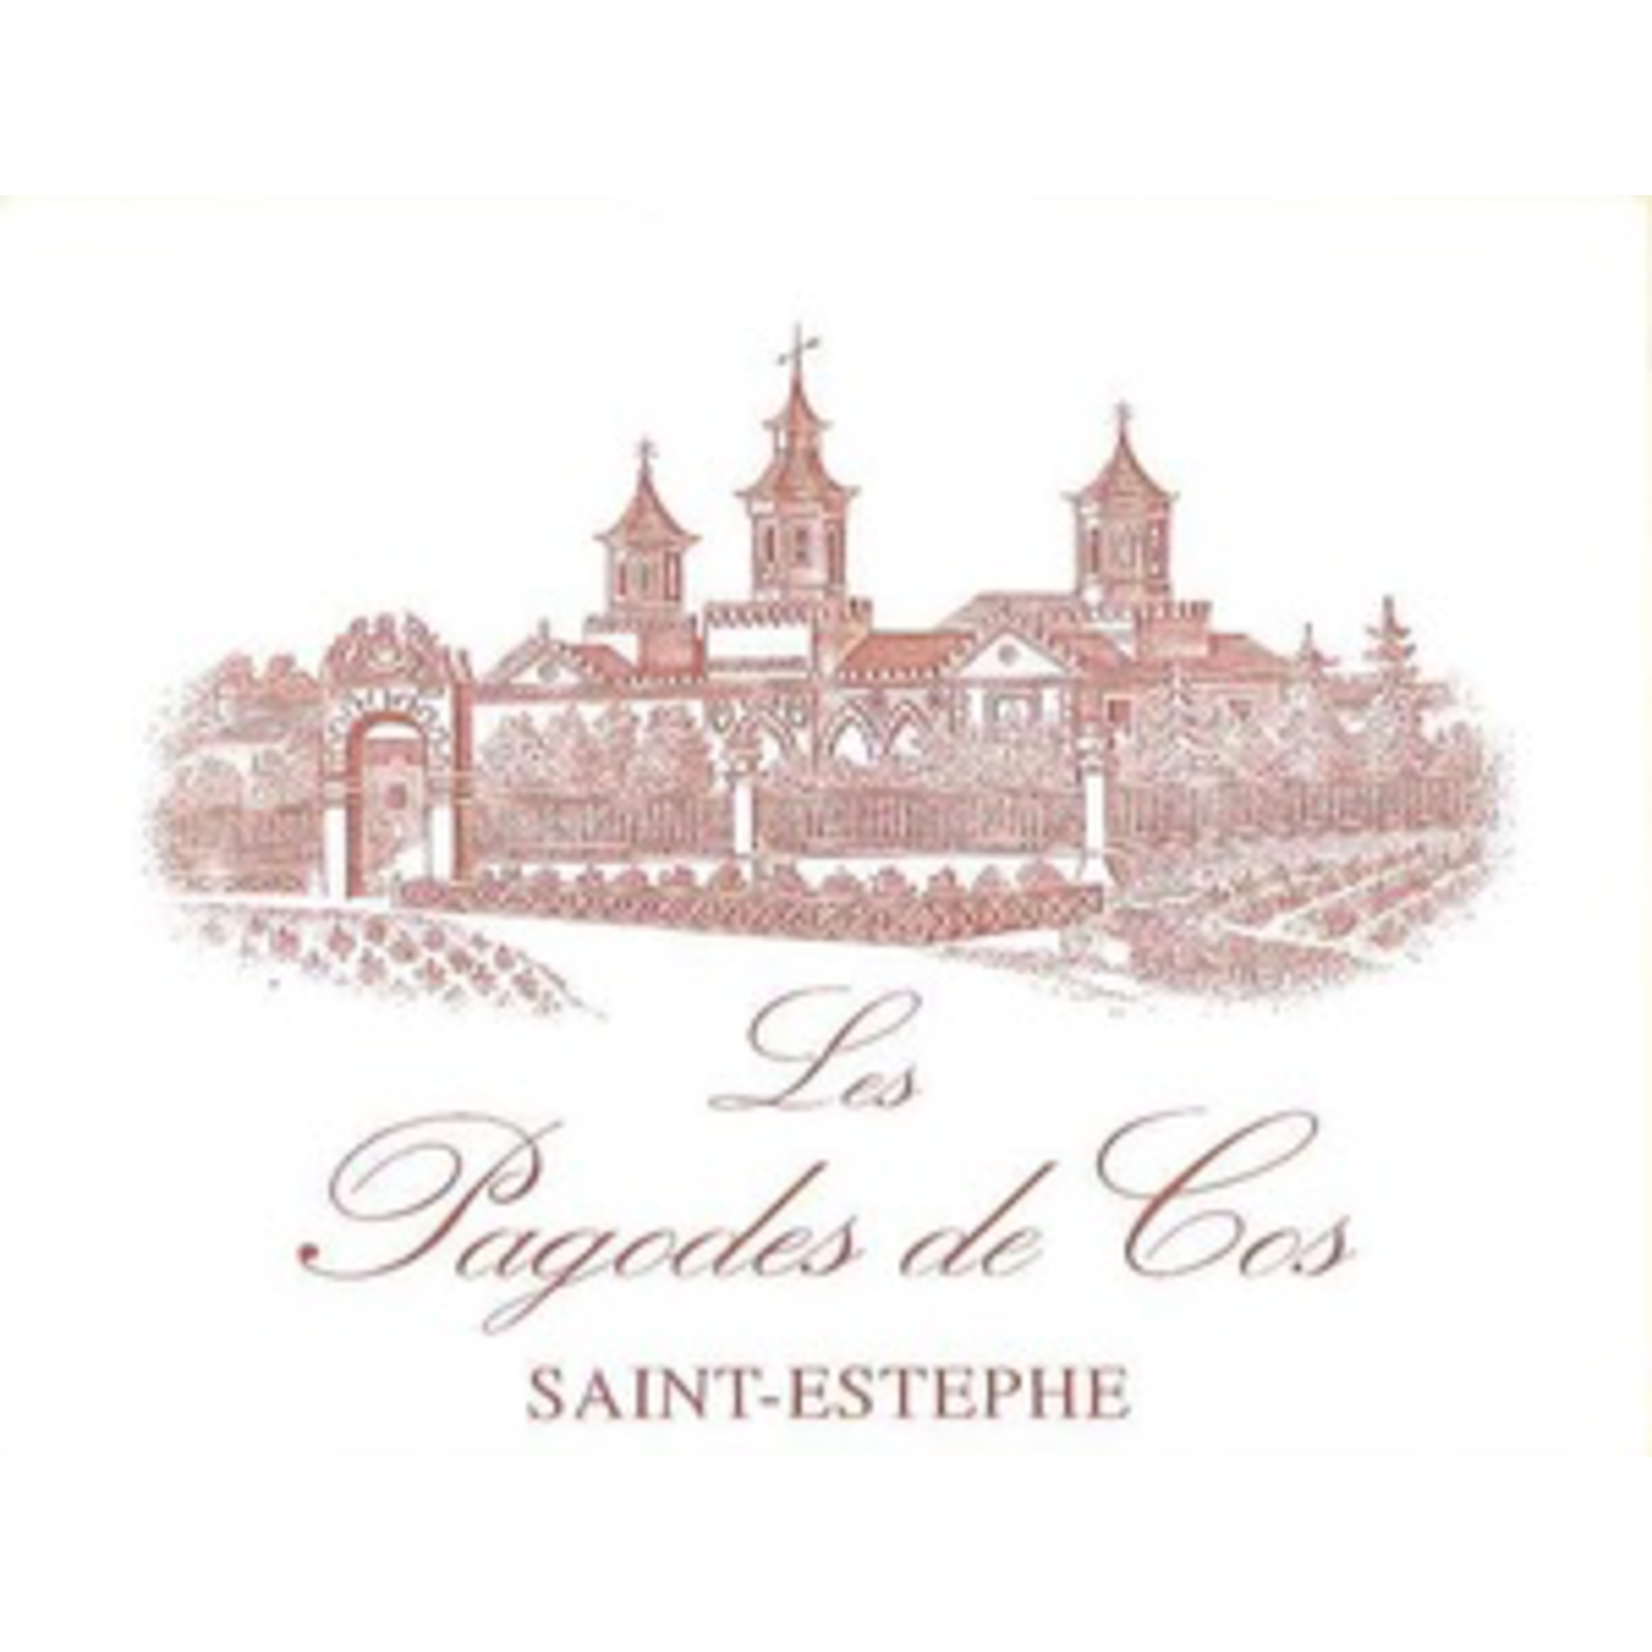 Wine Les Pagodes de Cos Saint-Estèphe 2010